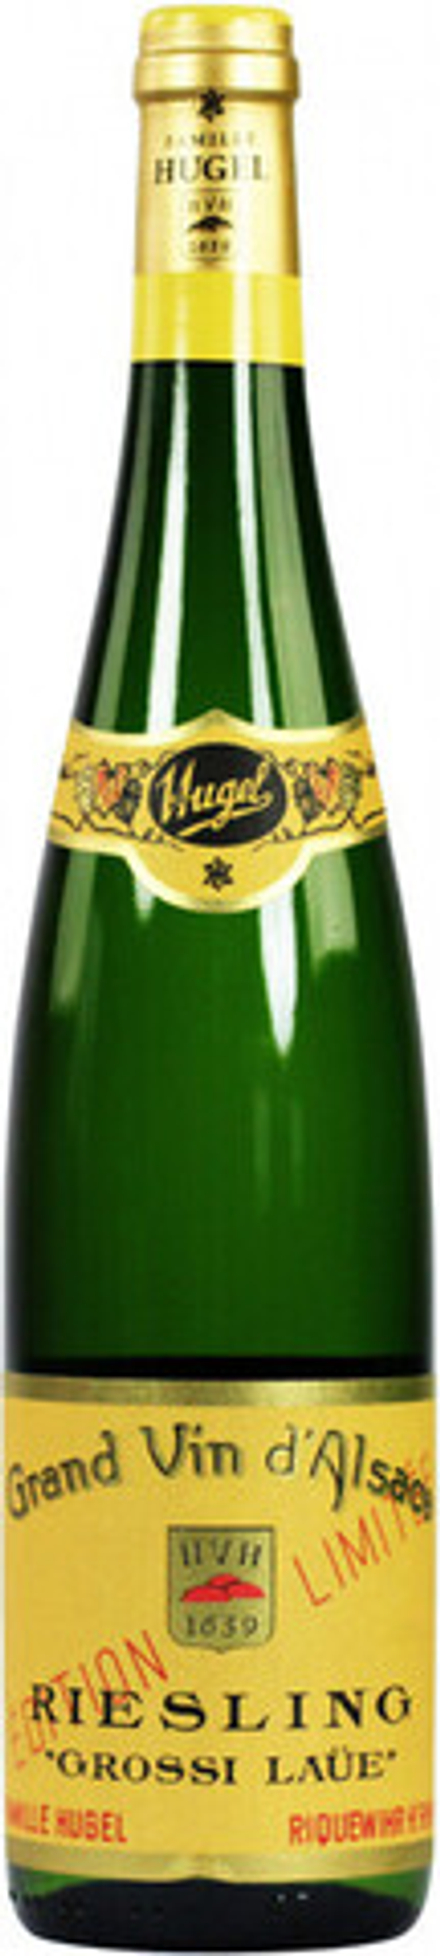 Вино Hugel Riesling Grossi Laue Alsace AOC, 0,75 л.